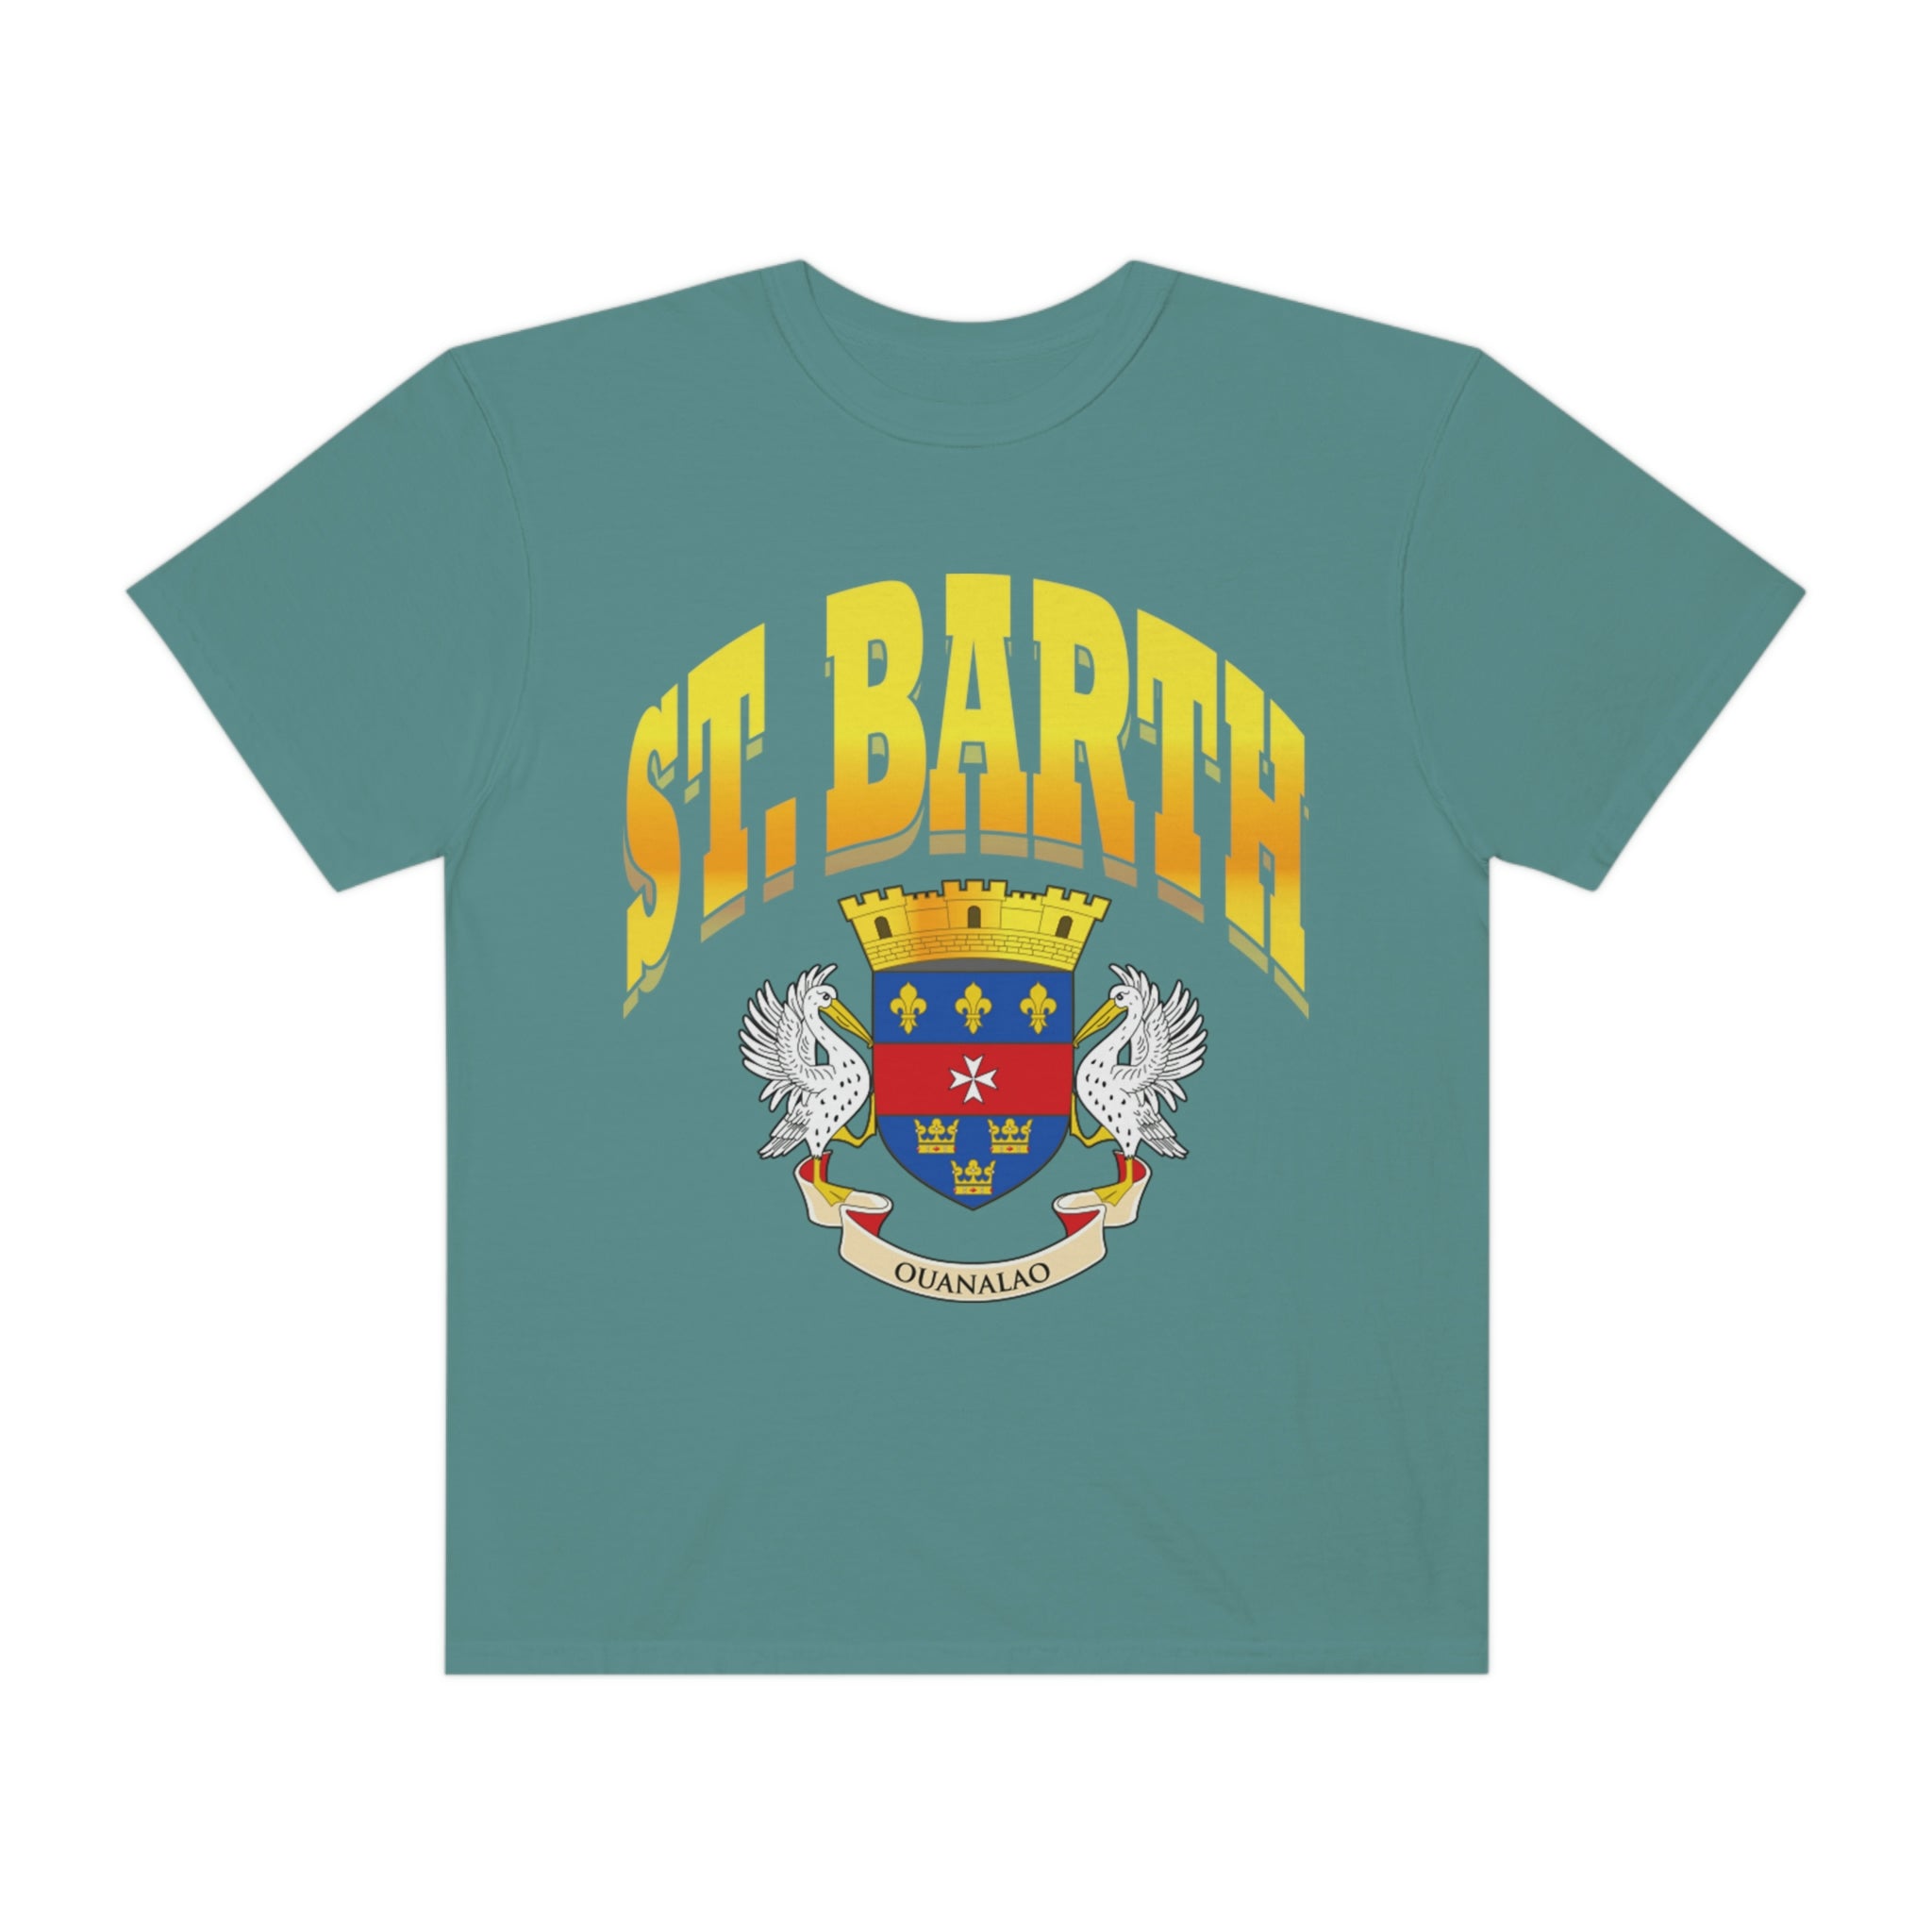 St Barths t-shirt, St Barth Crewneck, Saint Barths Shirt, Caribbean Beach Pullover, Spring Break Beach t-shirt, Beach Cover Up